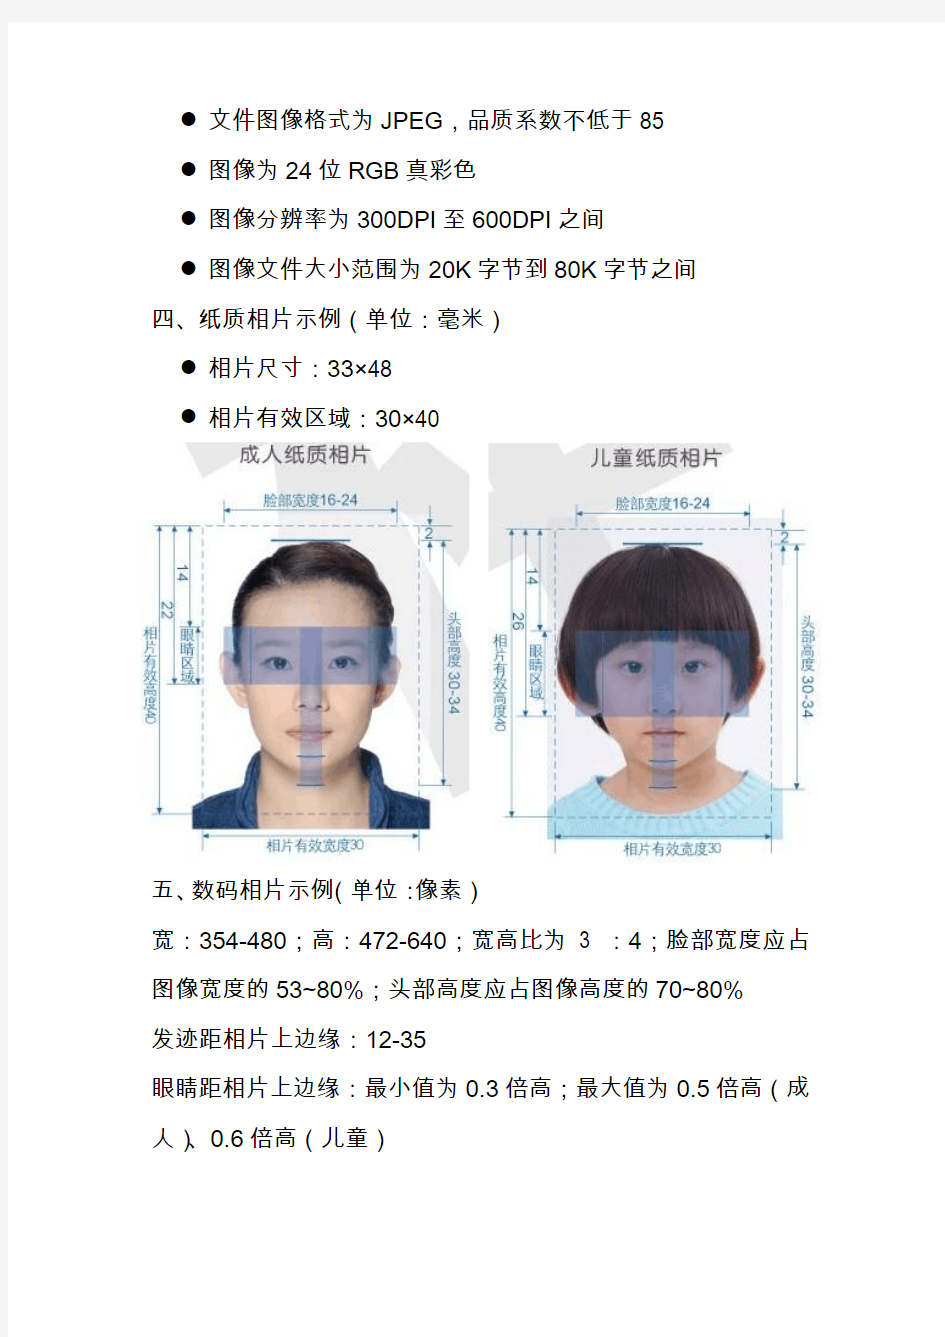 中国公民因私出国境证件照片标准